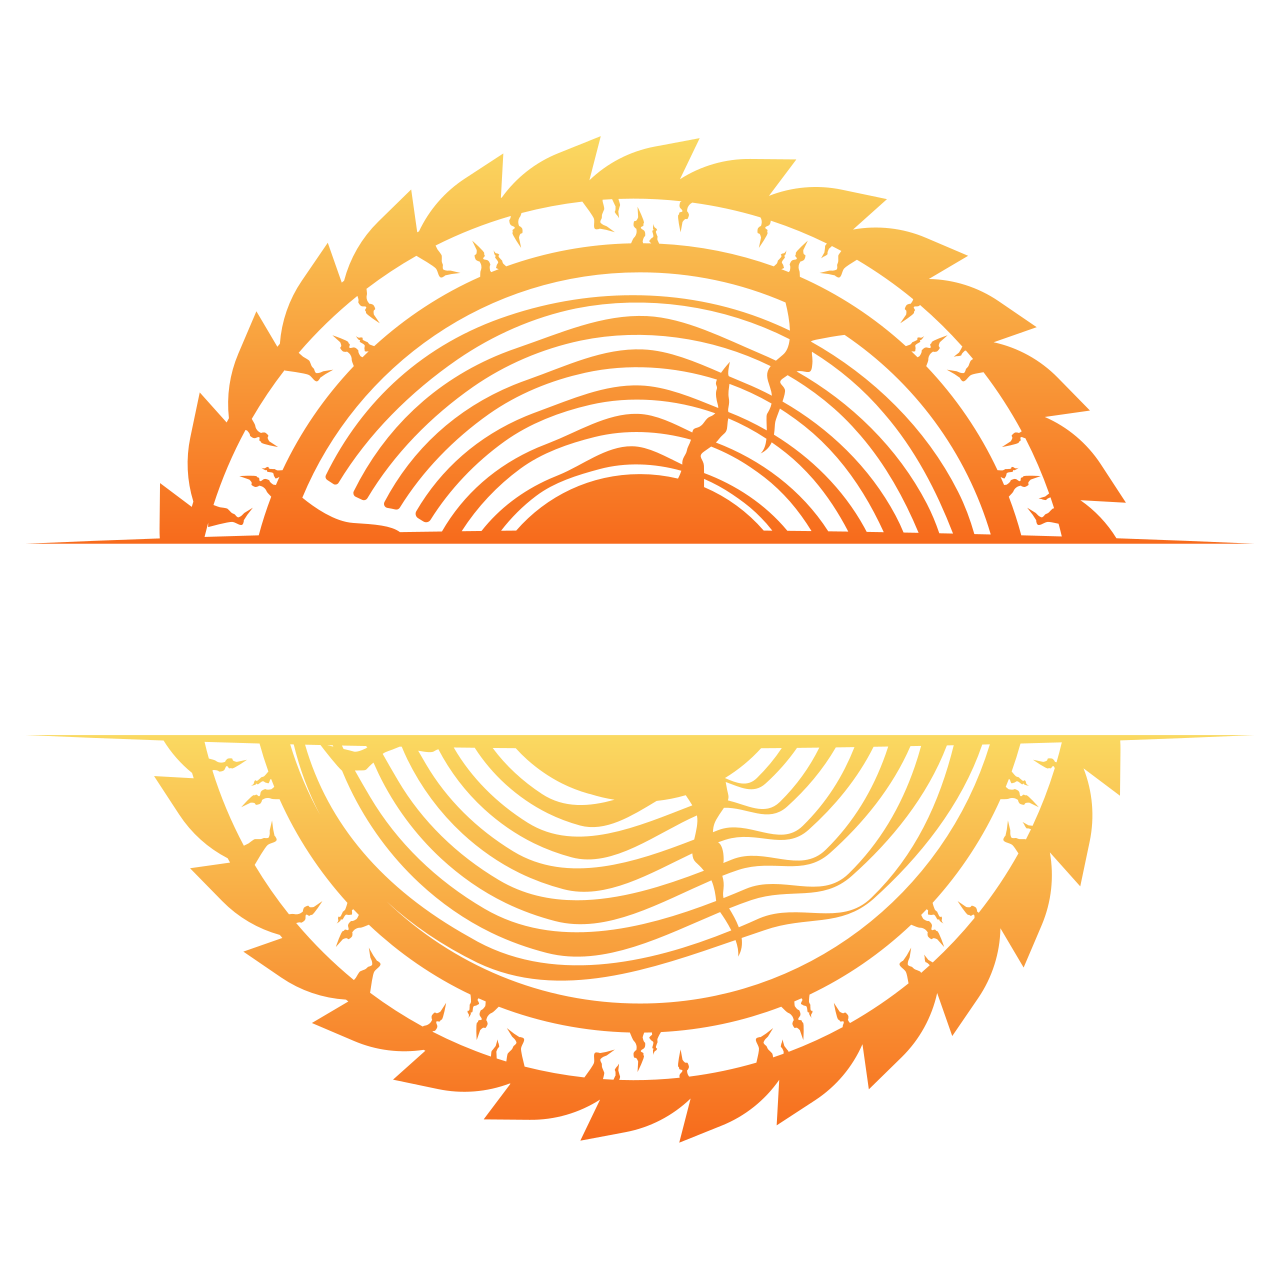 BM custom woodworks's logo